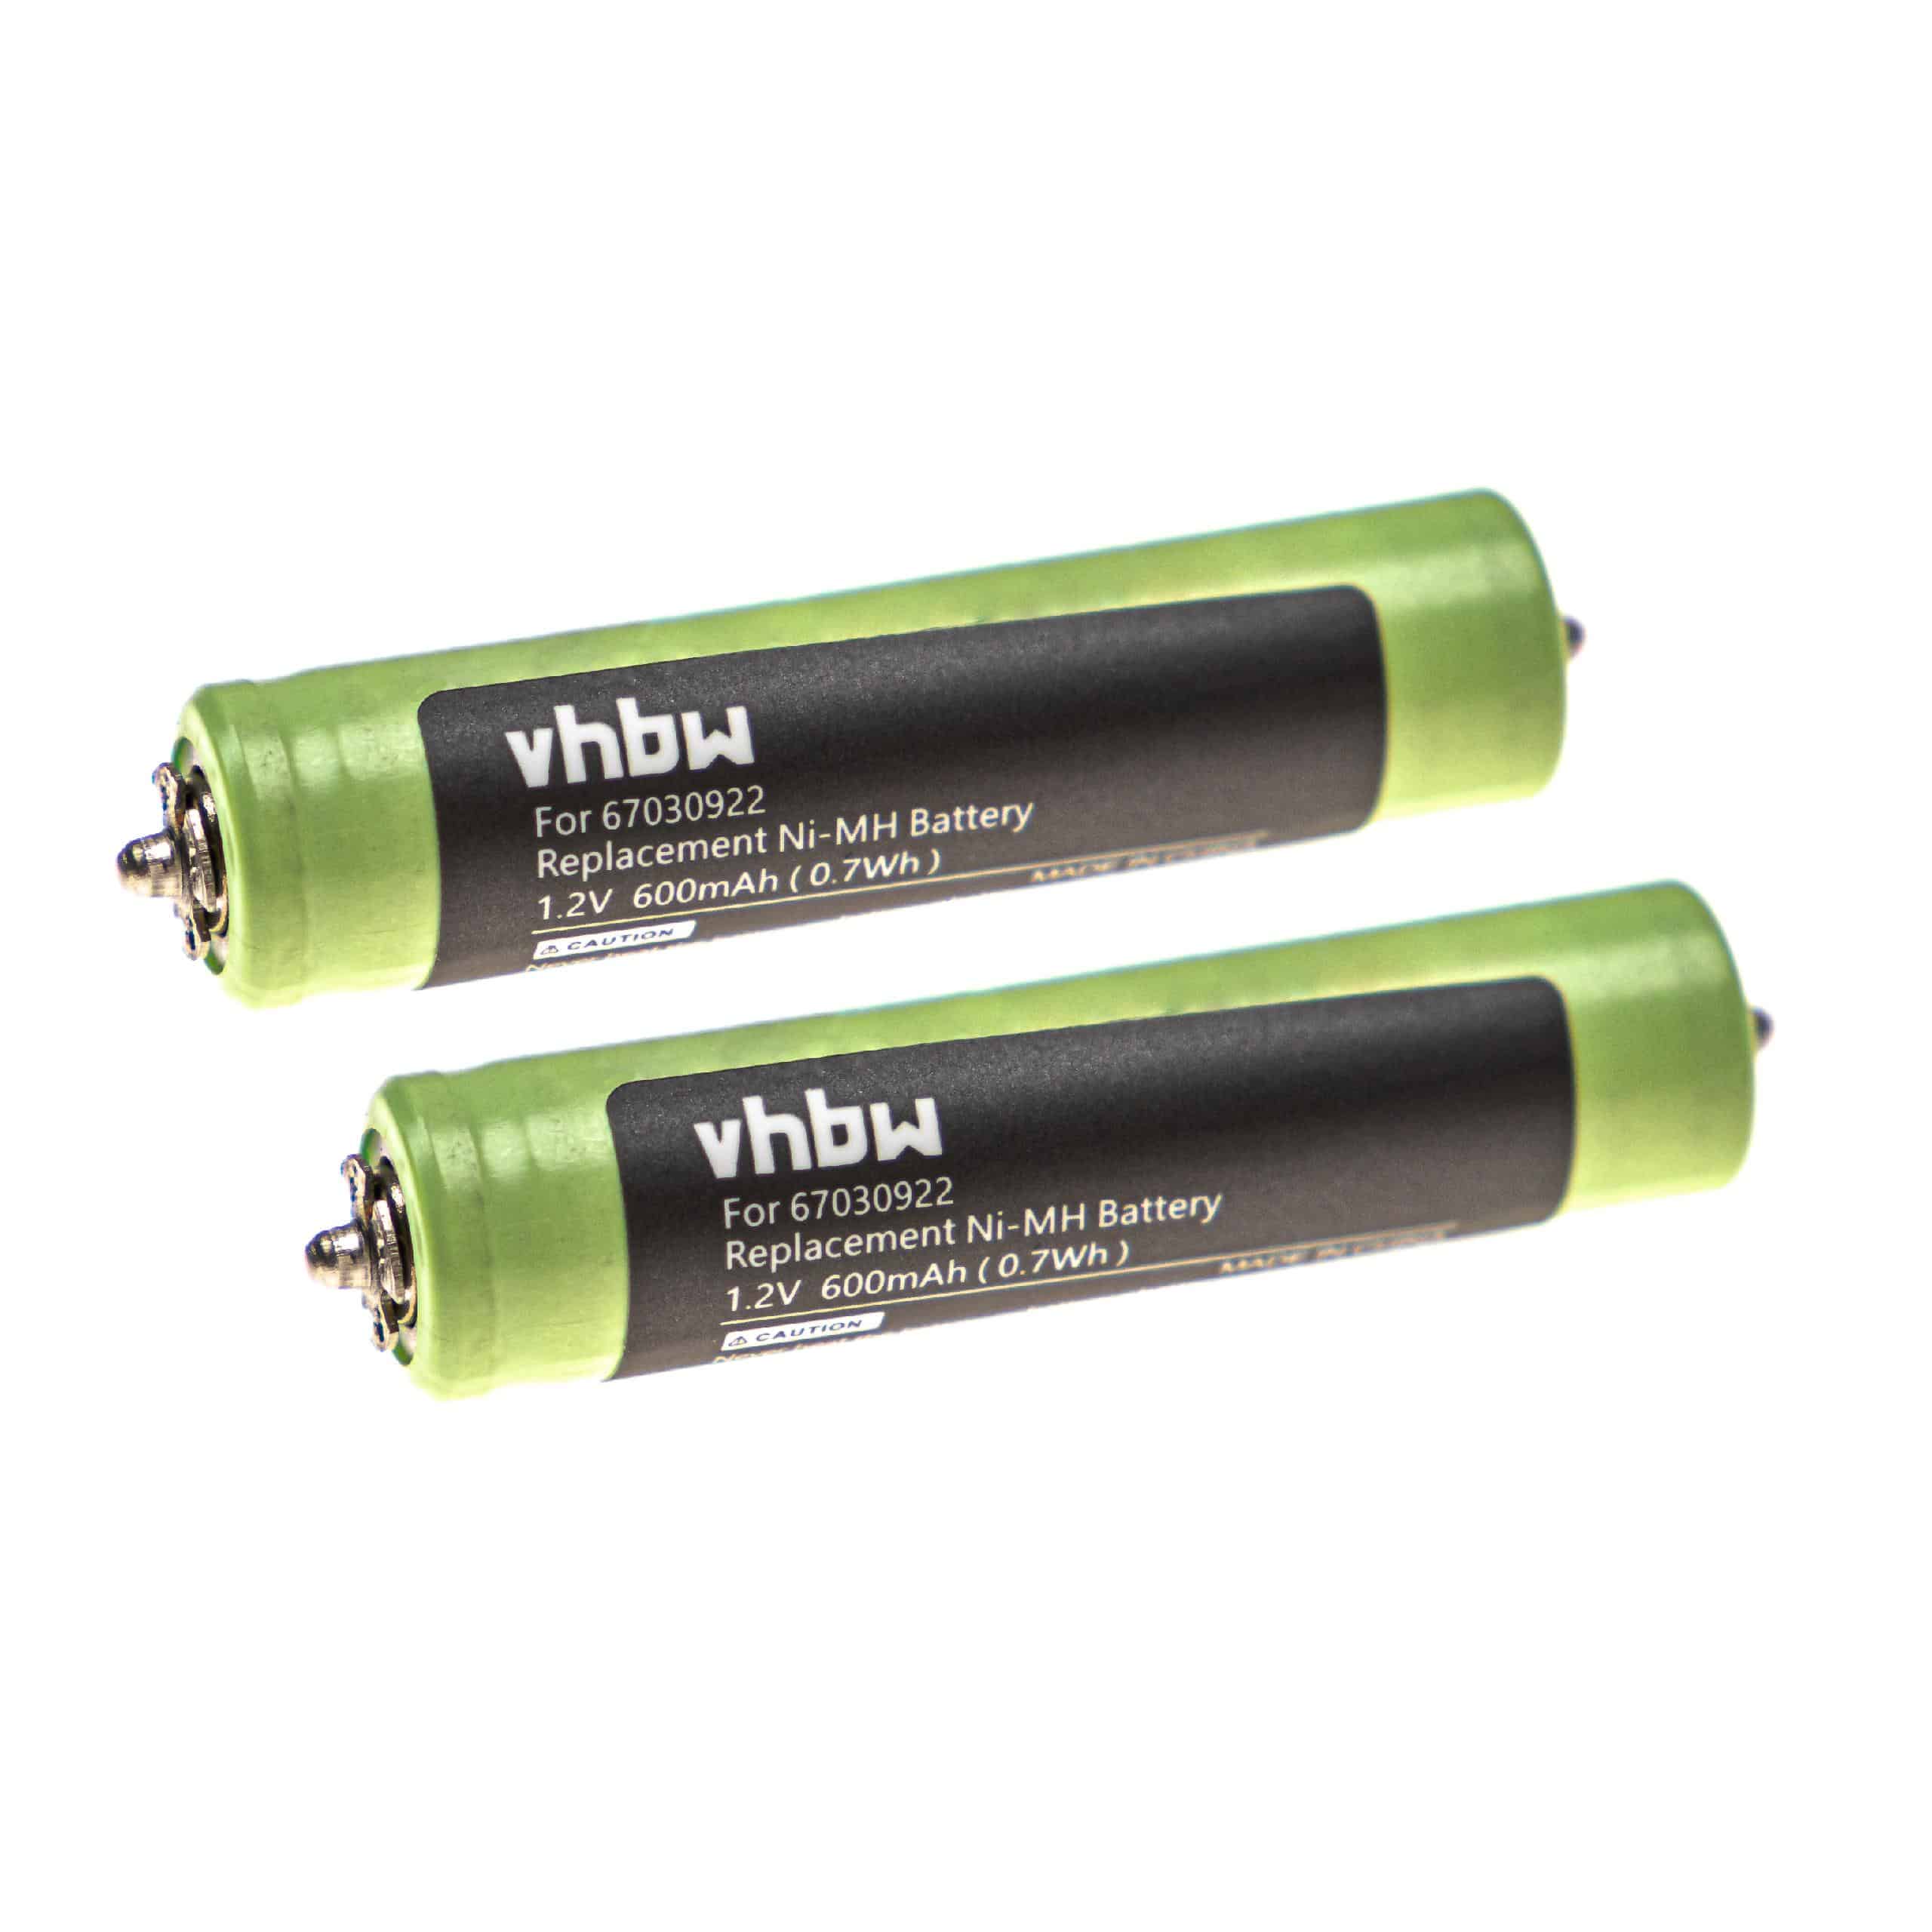 Batteries (2x pièces) remplace Braun 7030922, 67030922, 1HR-4UC pour rasoir électrique - 600mAh 1,2V NiMH